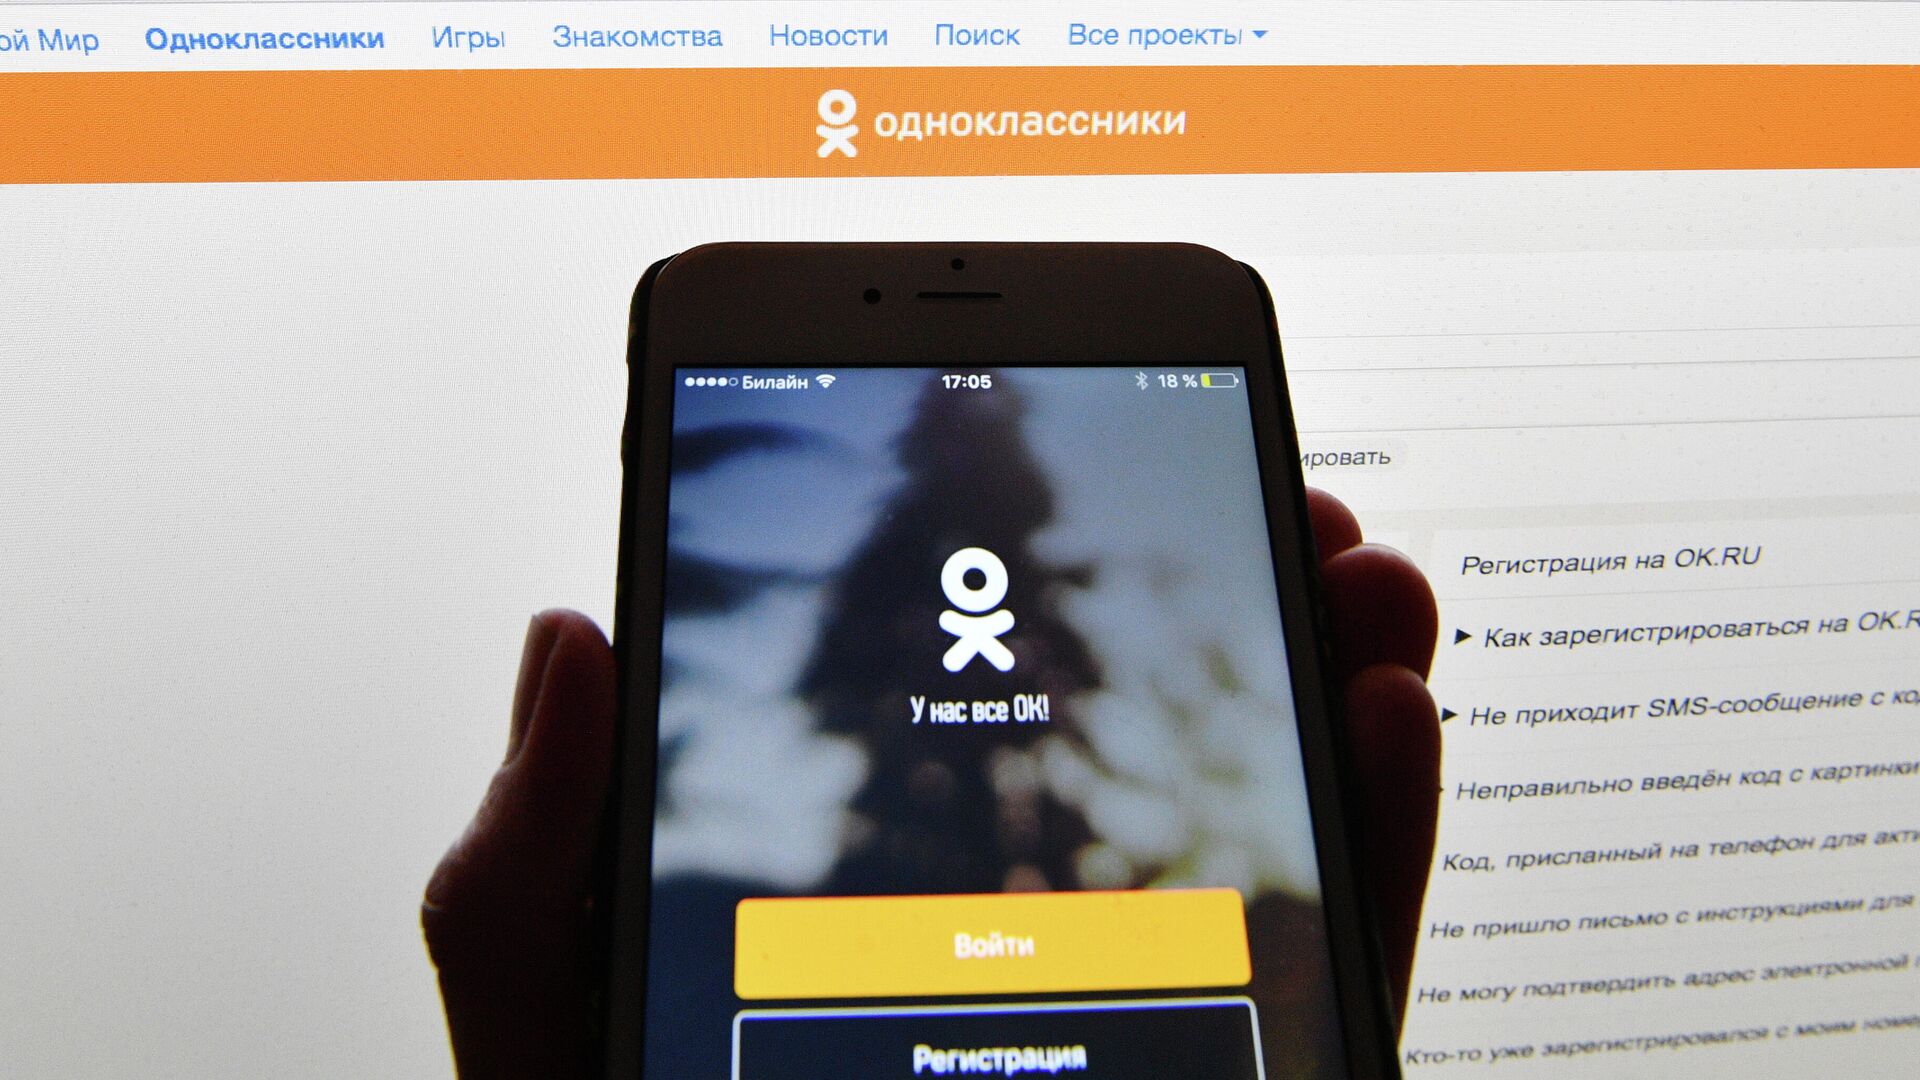 Как отключить оповещения в Одноклассниках на телефоне, способы убрать или восстановить СМС